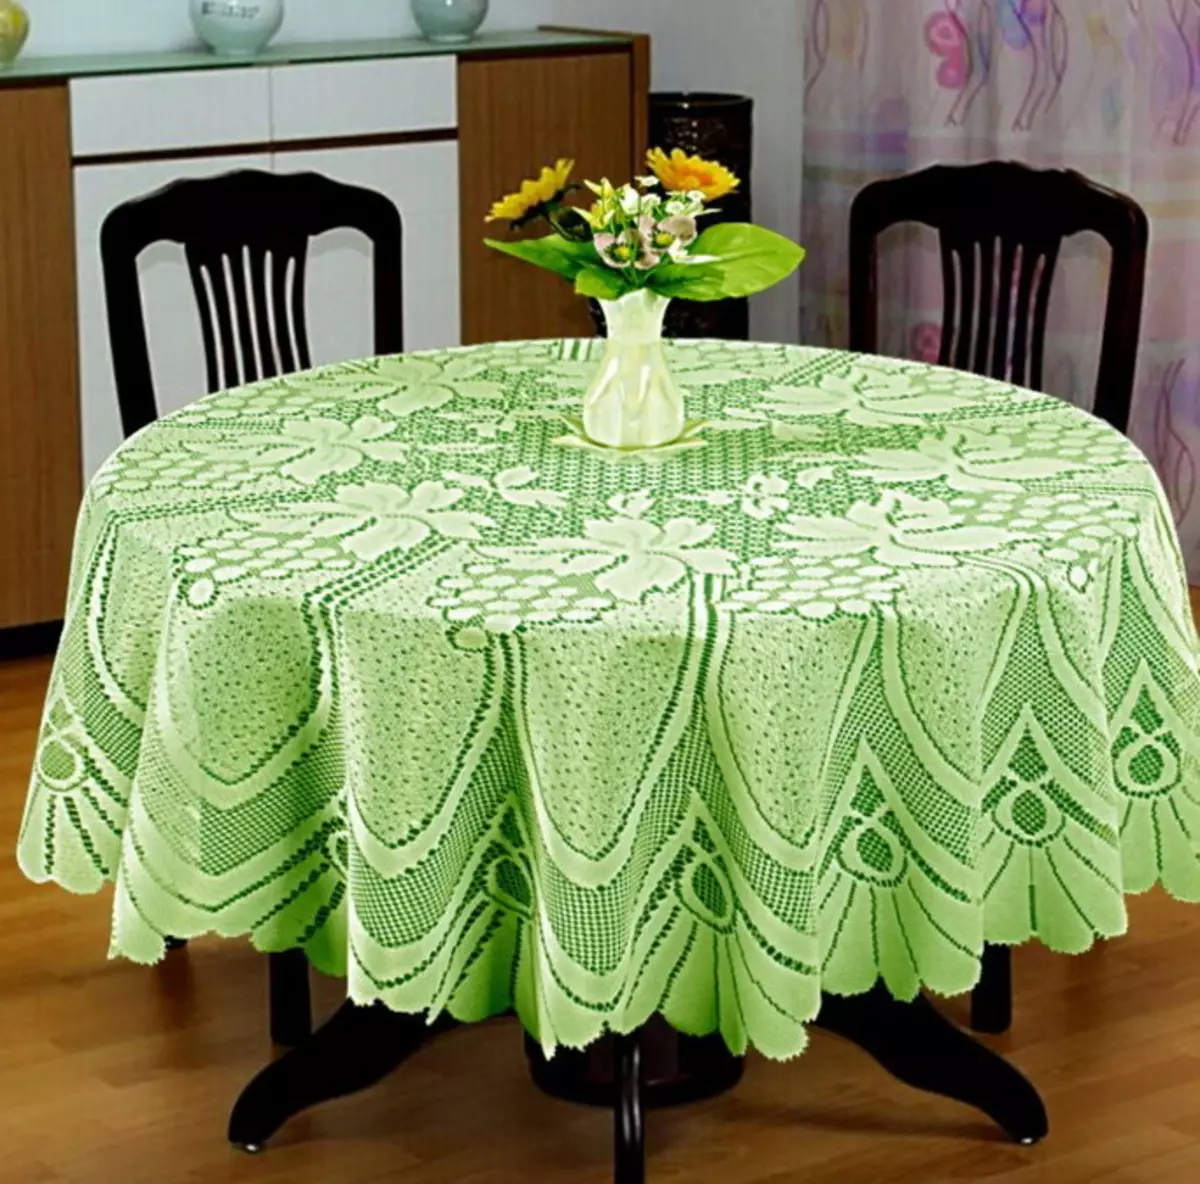 Manteles verdes: manteles monófonicos verdes oscuros en la mesa y green-green, opciones de configuración. Ropa de cama y jacquard, manteles ovalados y redondos en el interior. 21601_15